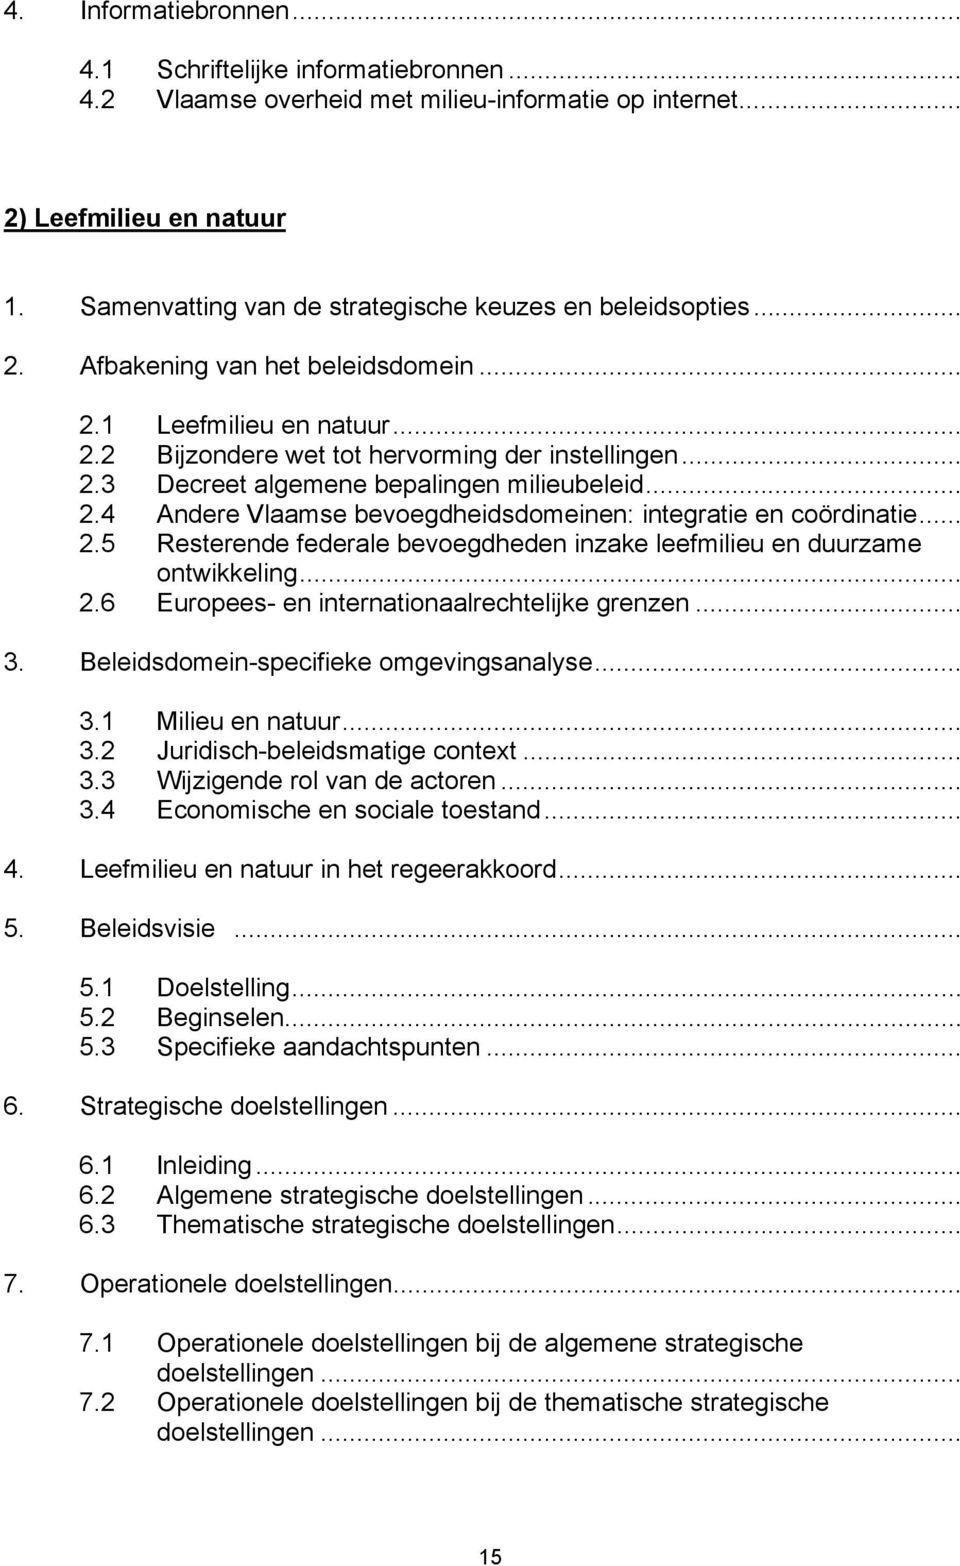 .. 2.4 Andere Vlaamse bevoegdheidsdomeinen: integratie en coördinatie... 2.5 Resterende federale bevoegdheden inzake leefmilieu en duurzame ontwikkeling... 2.6 Europees- en internationaalrechtelijke grenzen.